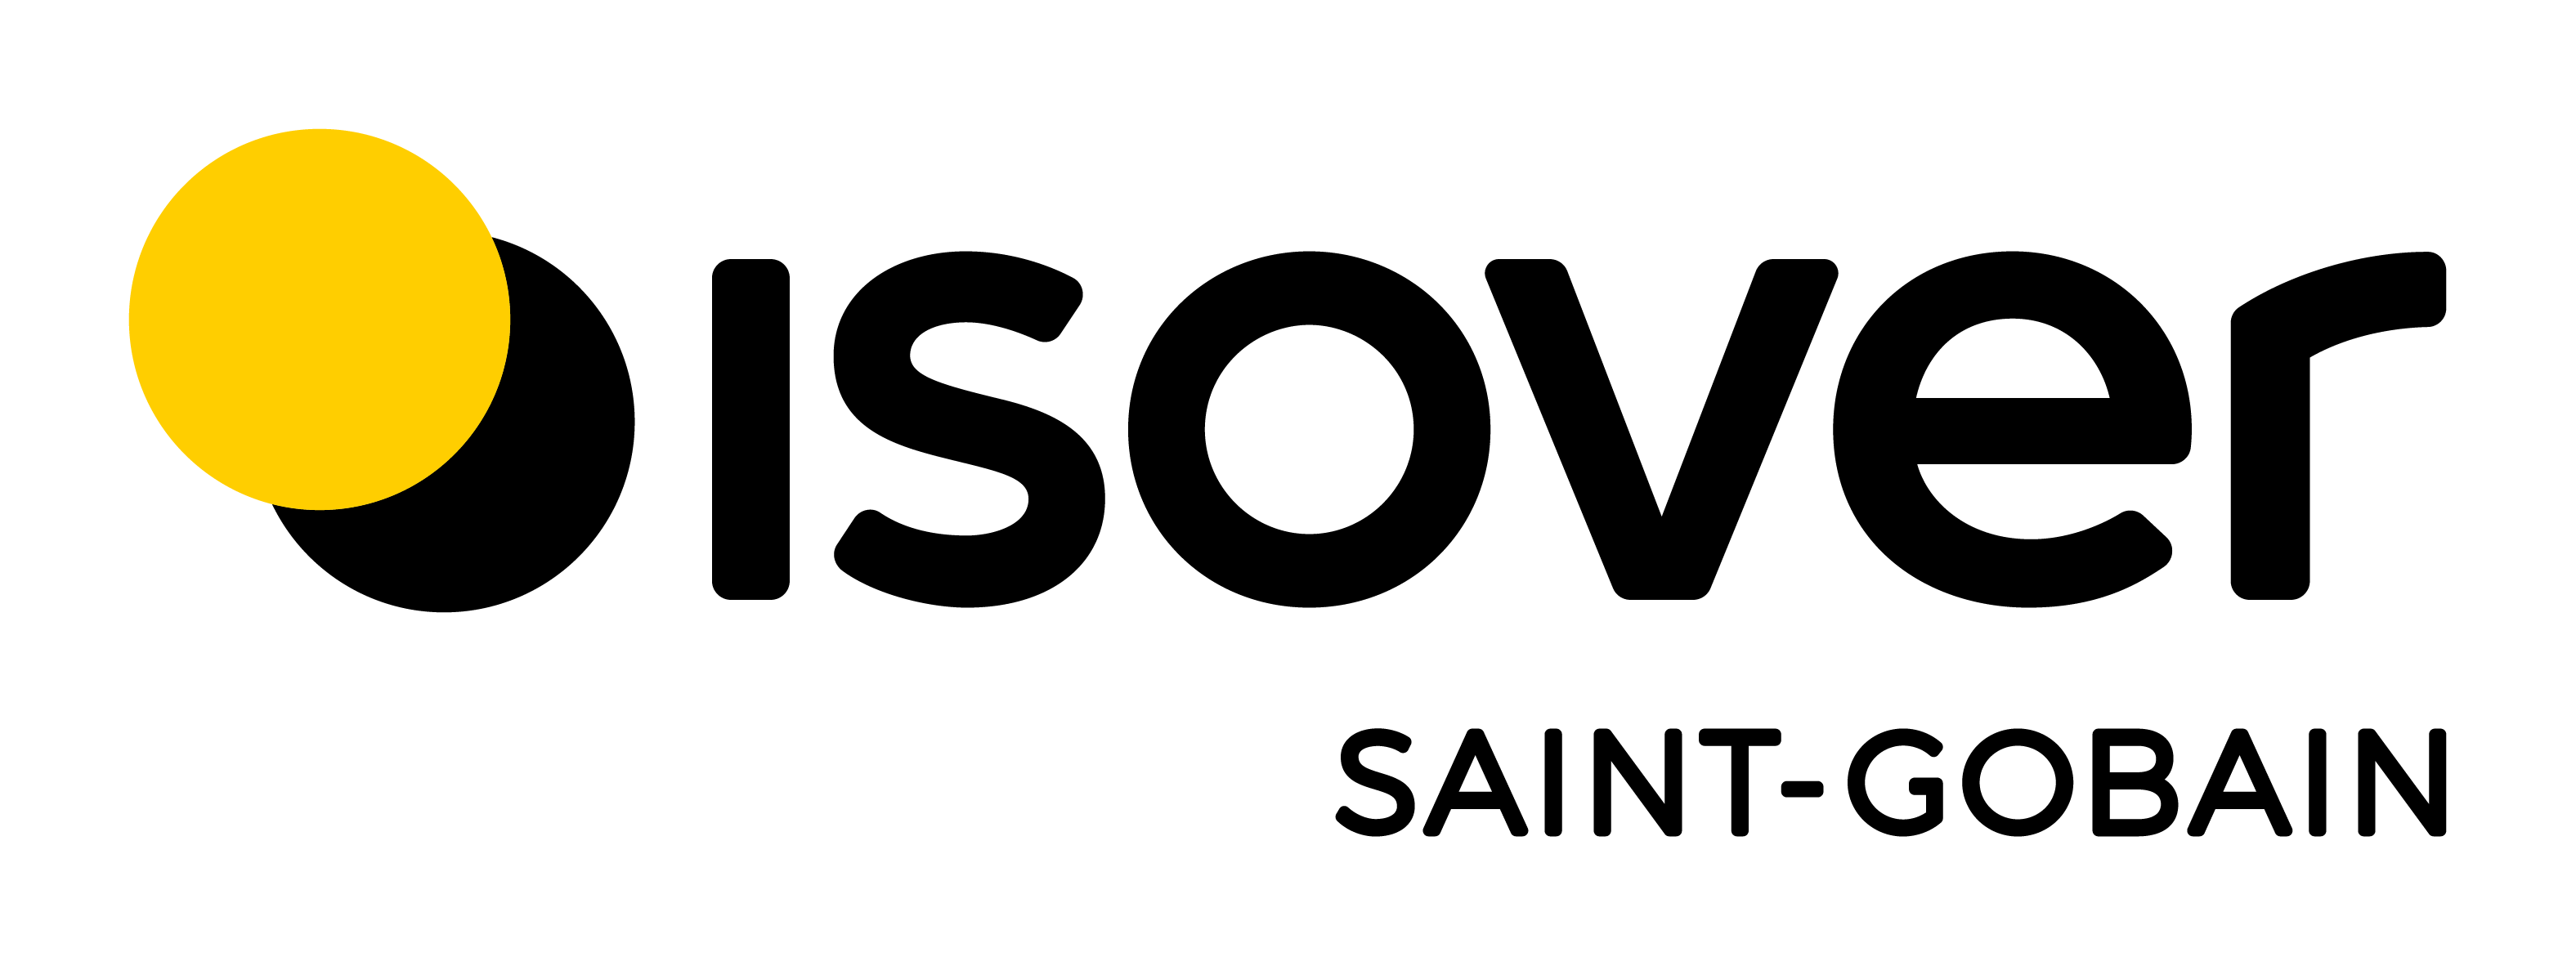 Partenaires meunier - Logo Isover